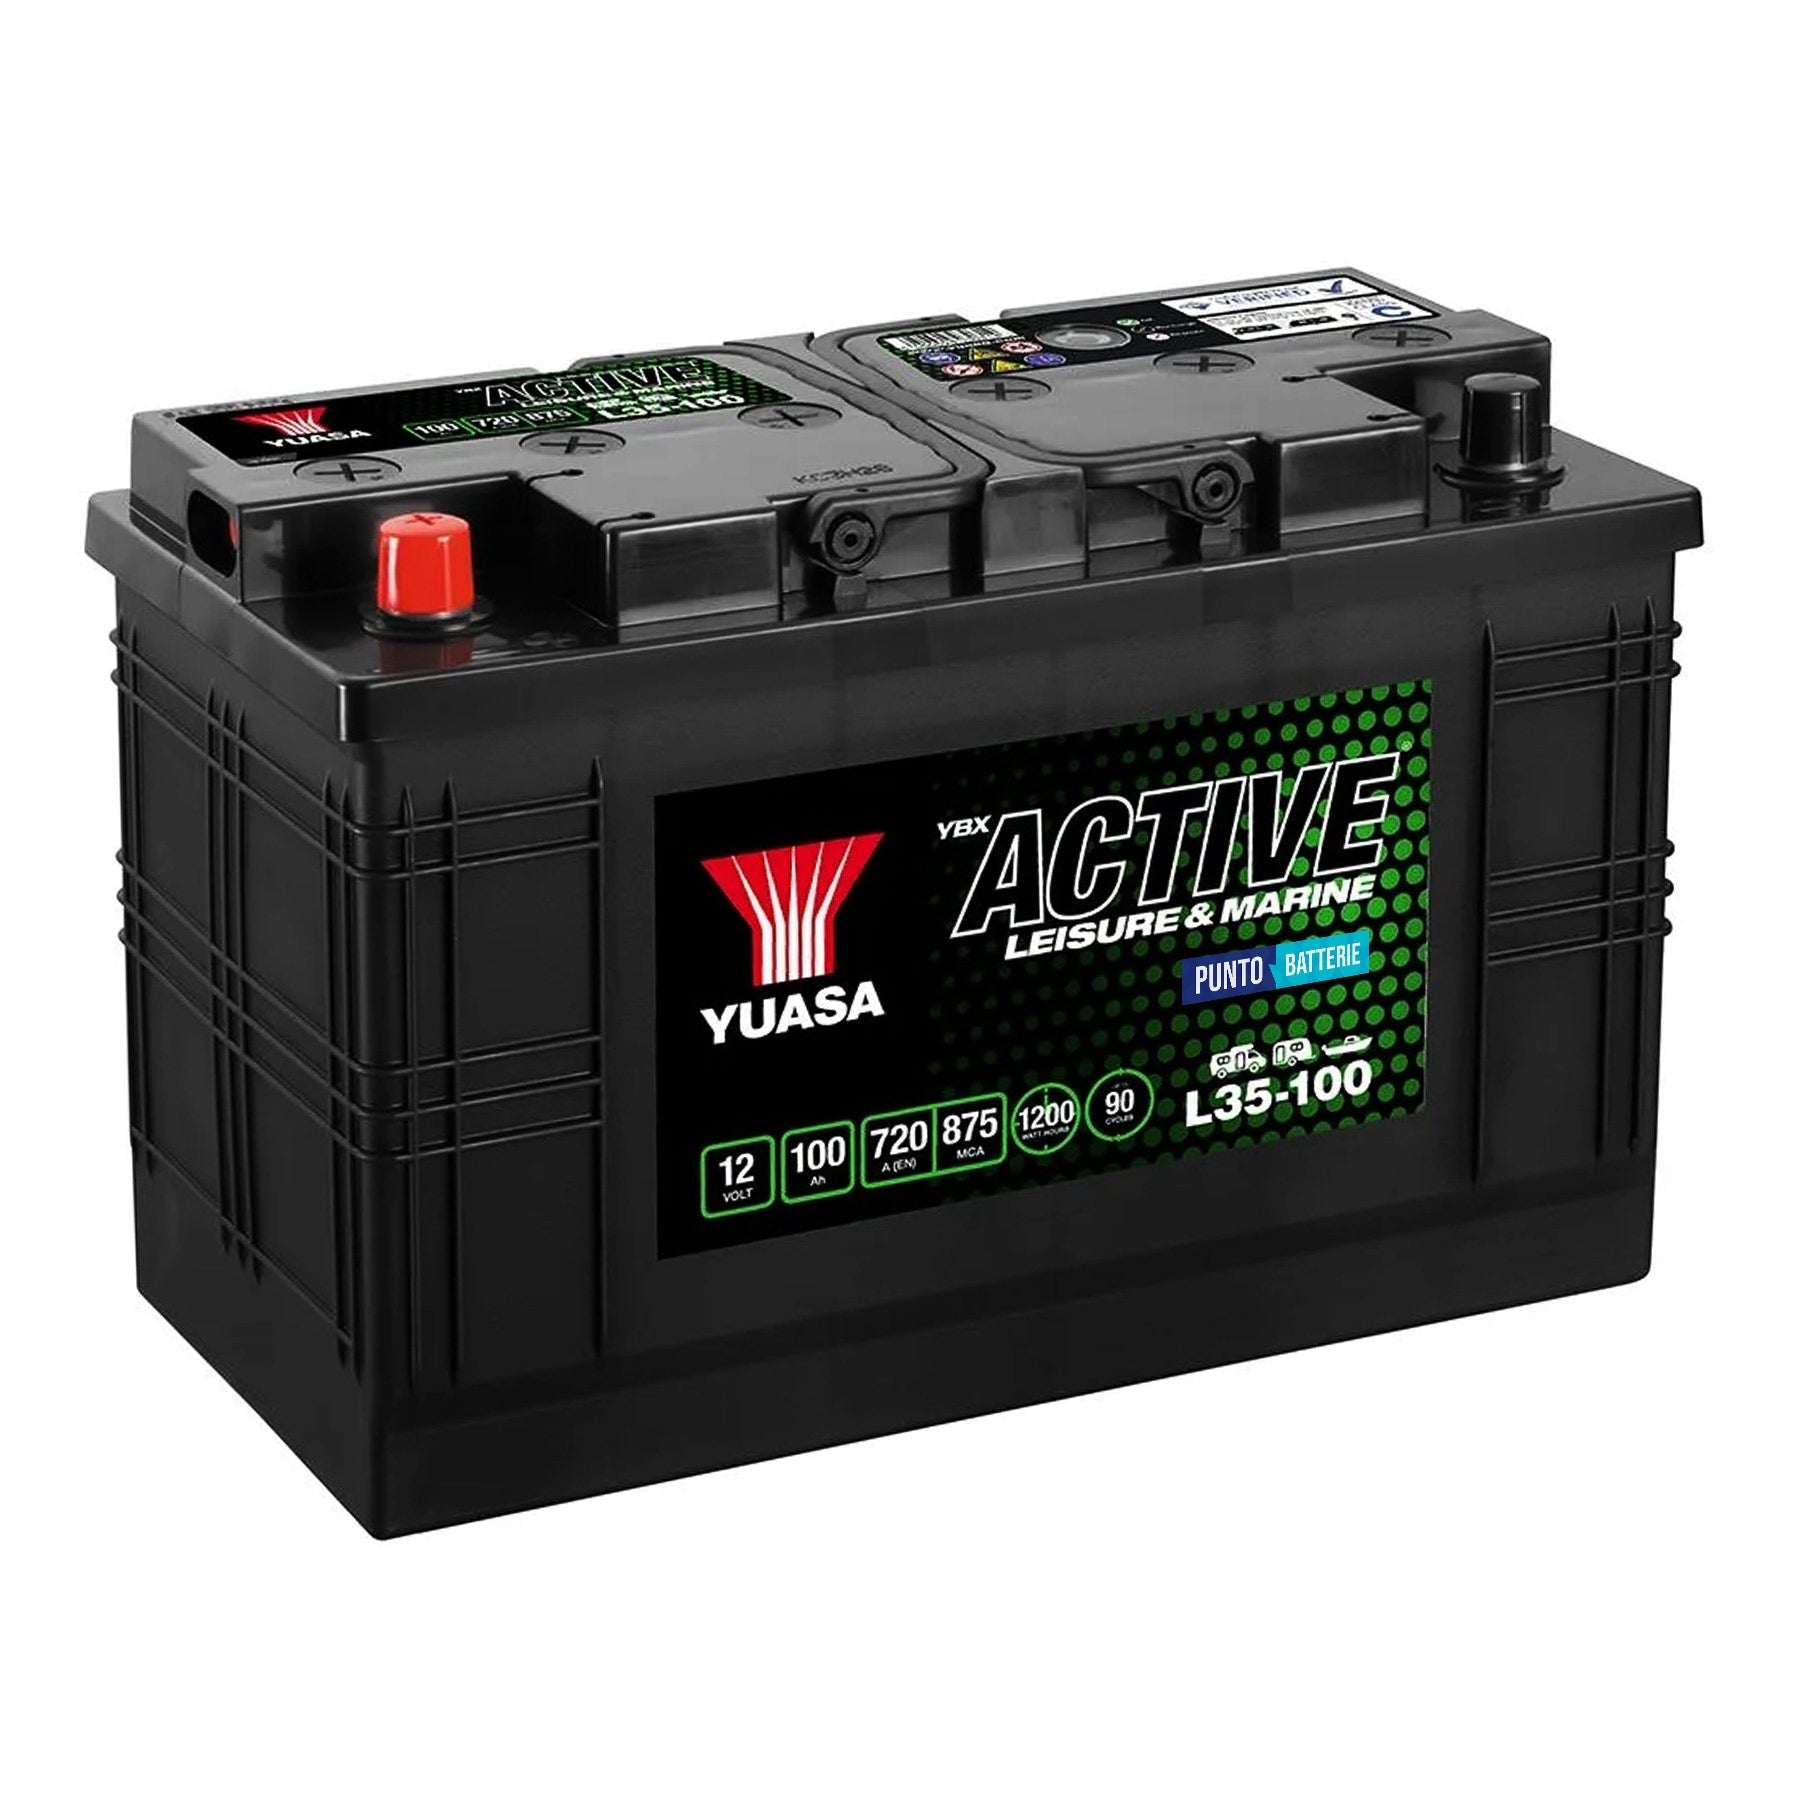 Batteria originale Yuasa YBX ACTIVE Leisure e Marine L35-100, dimensioni 352 x 175 x 227